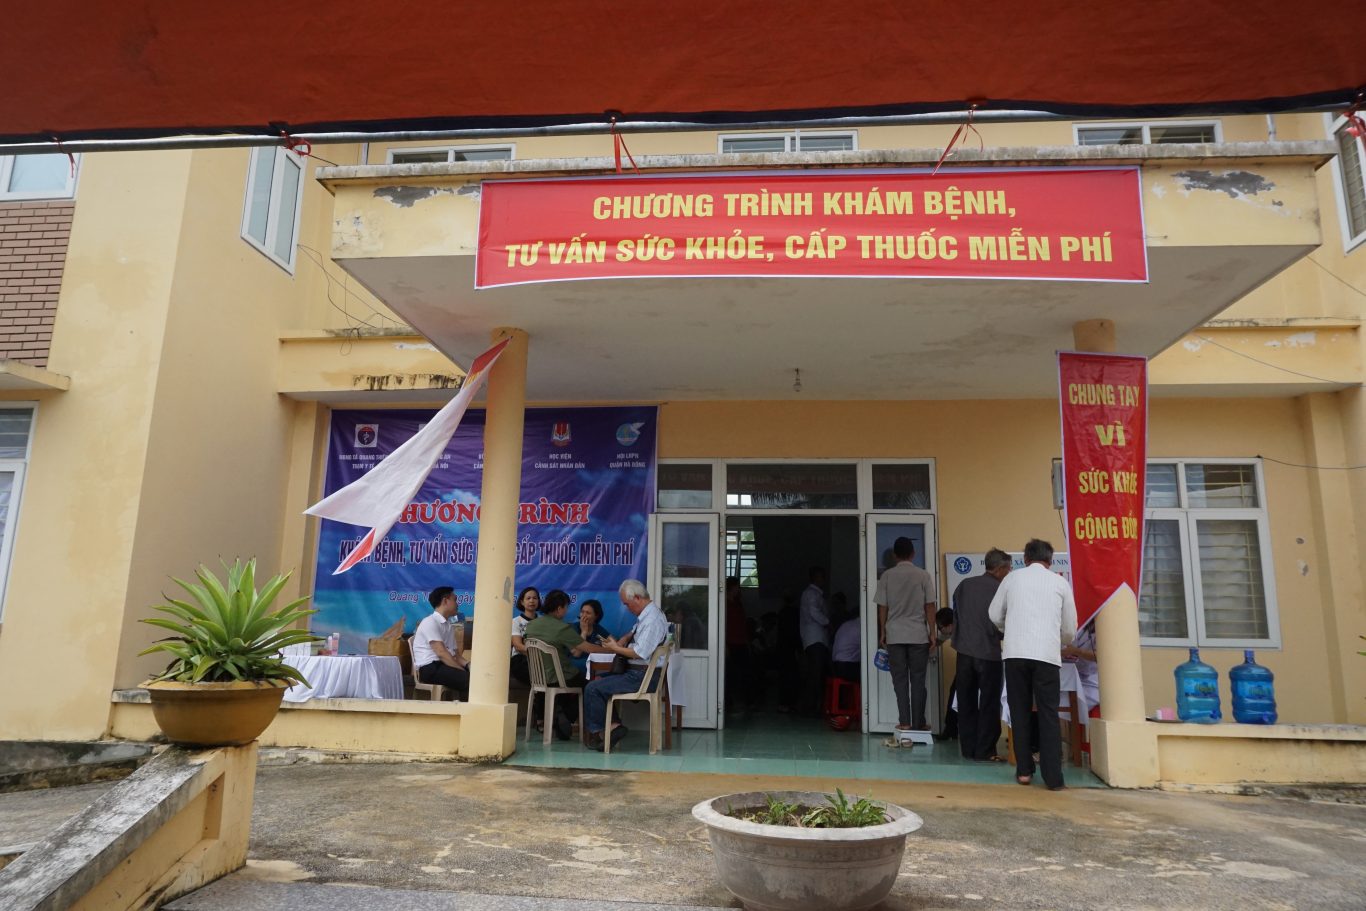 Chương trình khám bệnh, tư vấn và cấp thuốc miễn phí tại xã Quang Thiện, huyện Kim Sơn, tỉnh Ninh Bình